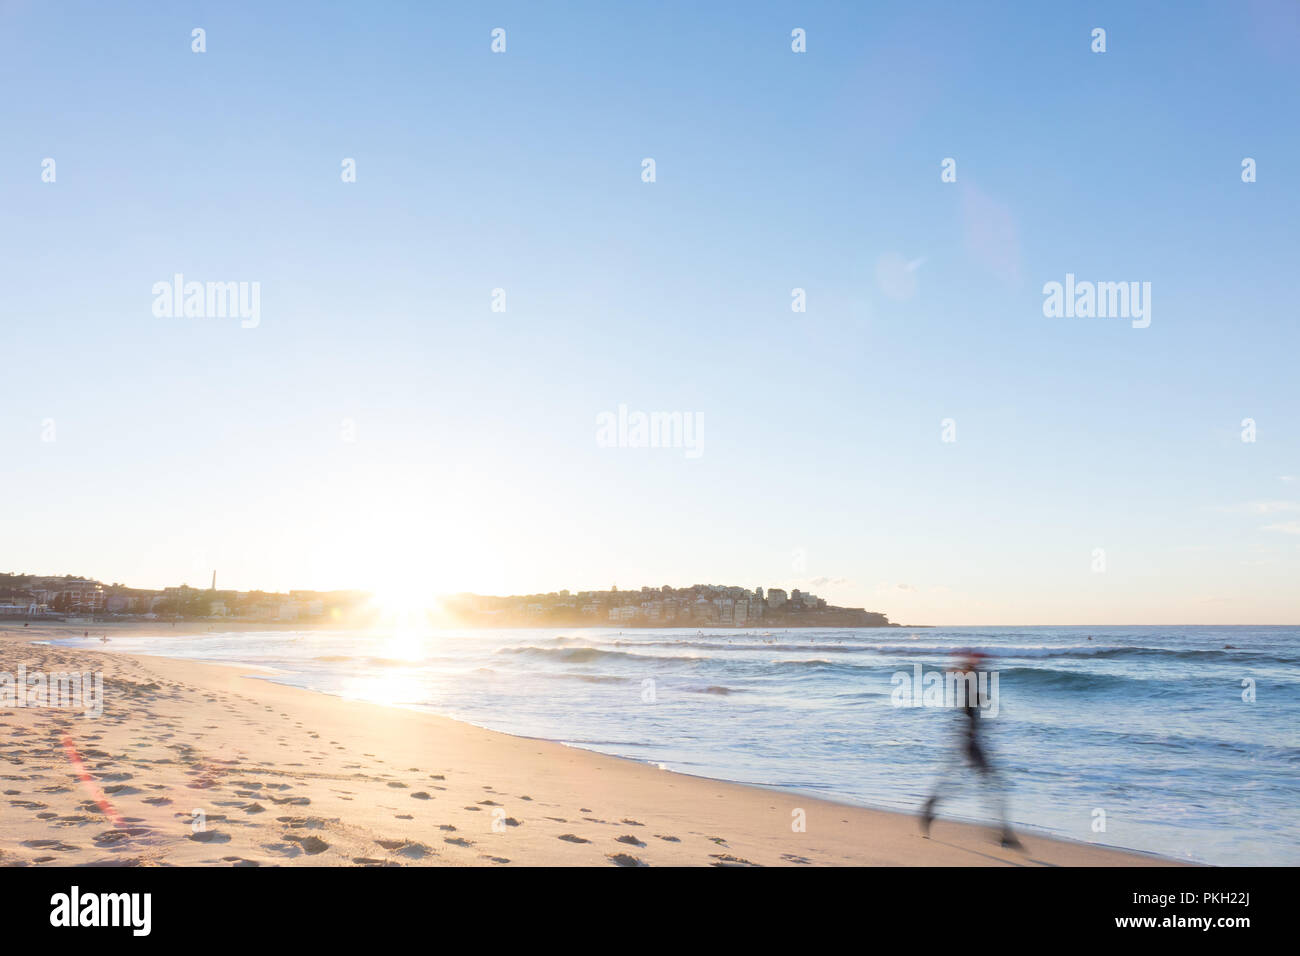 Bondi Beach, Sydney, Australie - un jogger s'étend le long de la plage au lever du soleil Banque D'Images